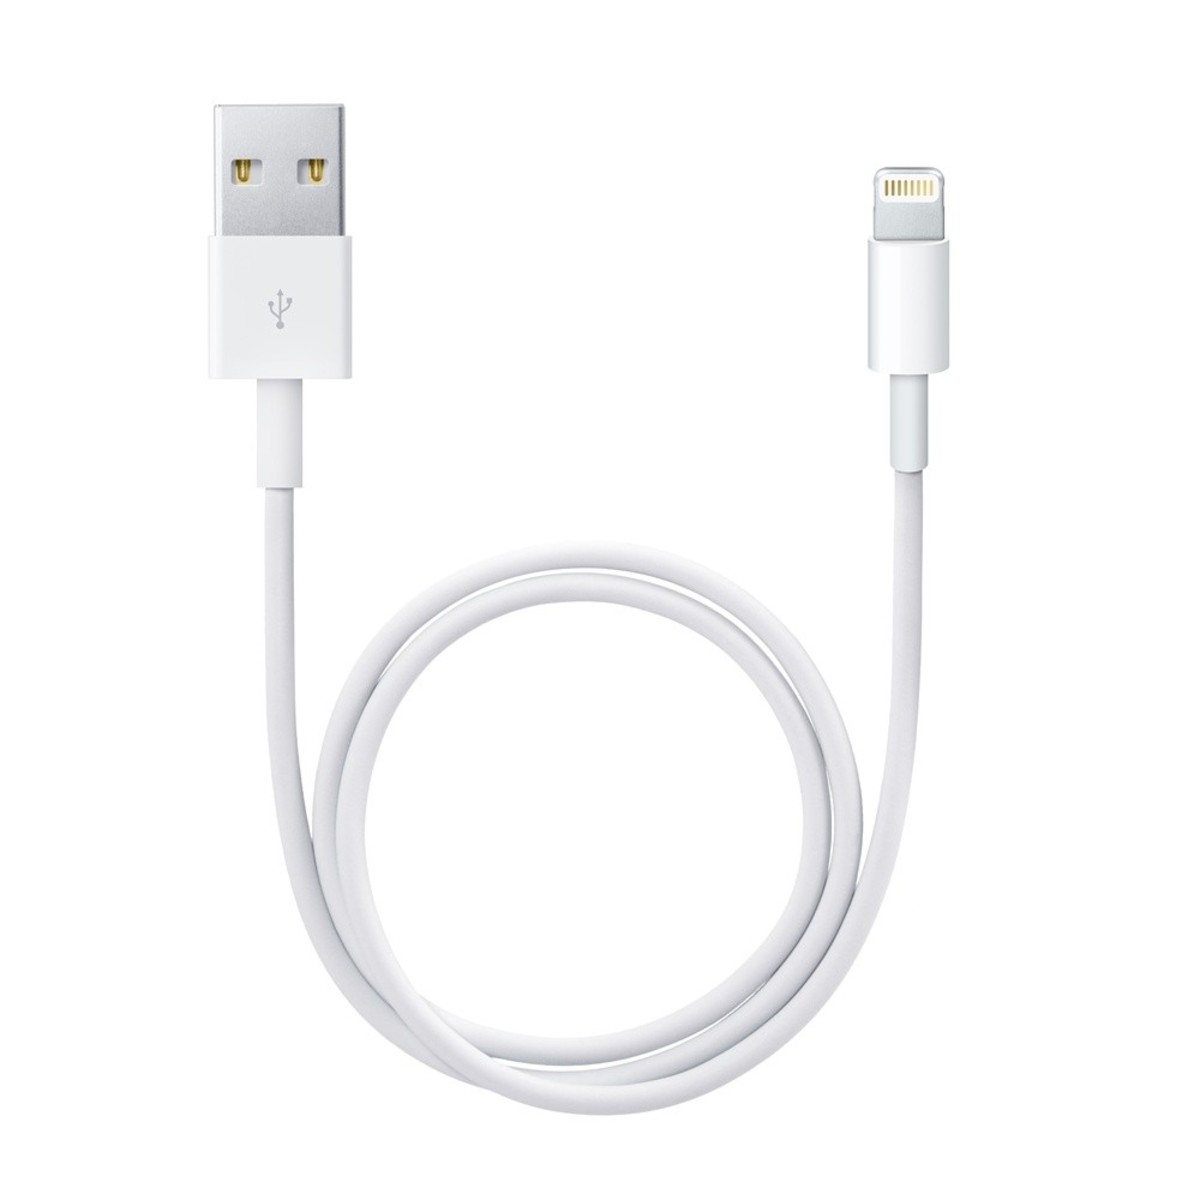 Apple Lightning to USB Cable Tablet/Ipad Accessories Lulu KSA